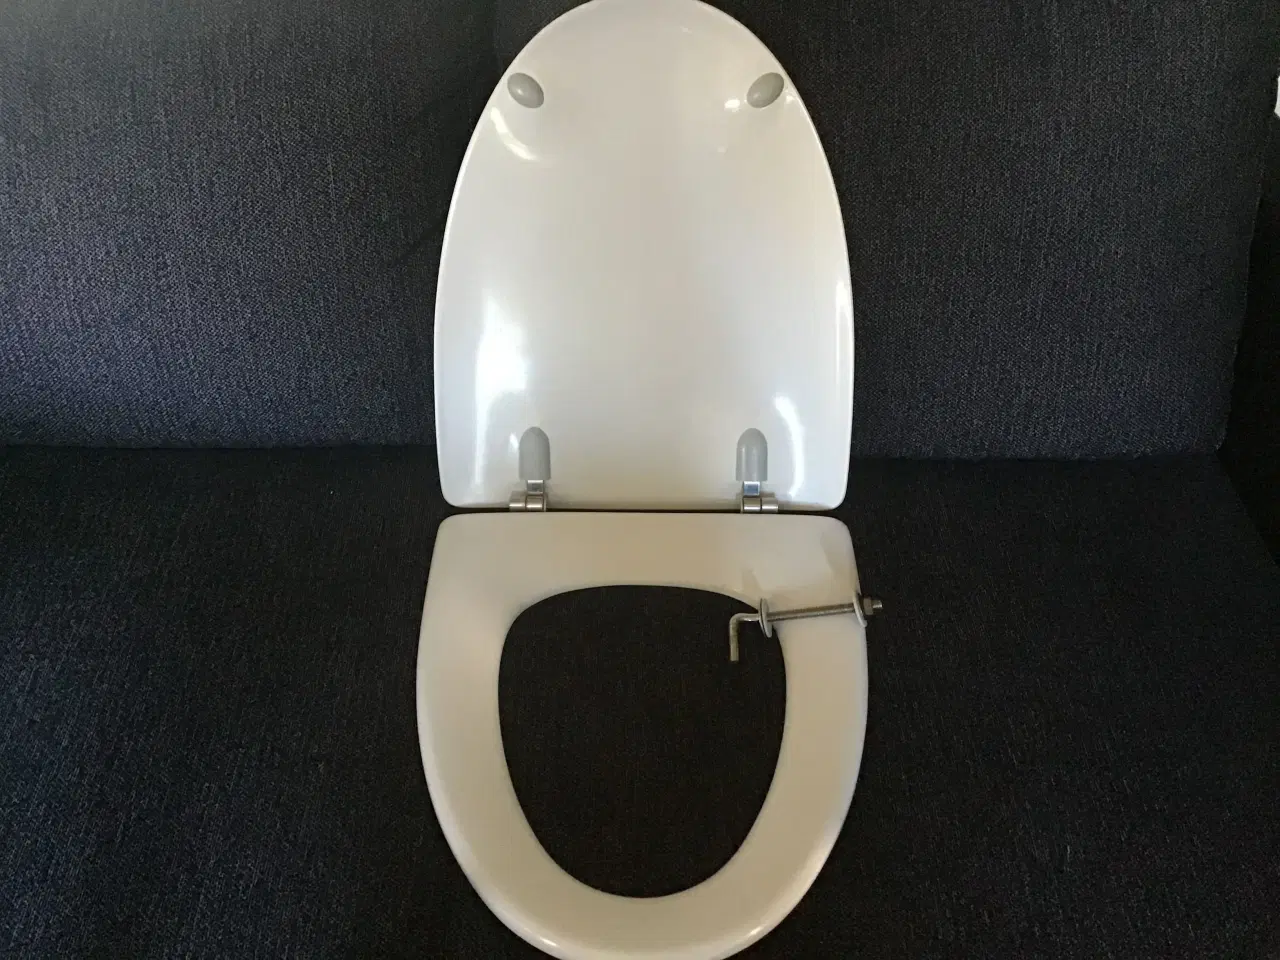 Billede 2 - Toilet sæde ifø sign.Fejler intet